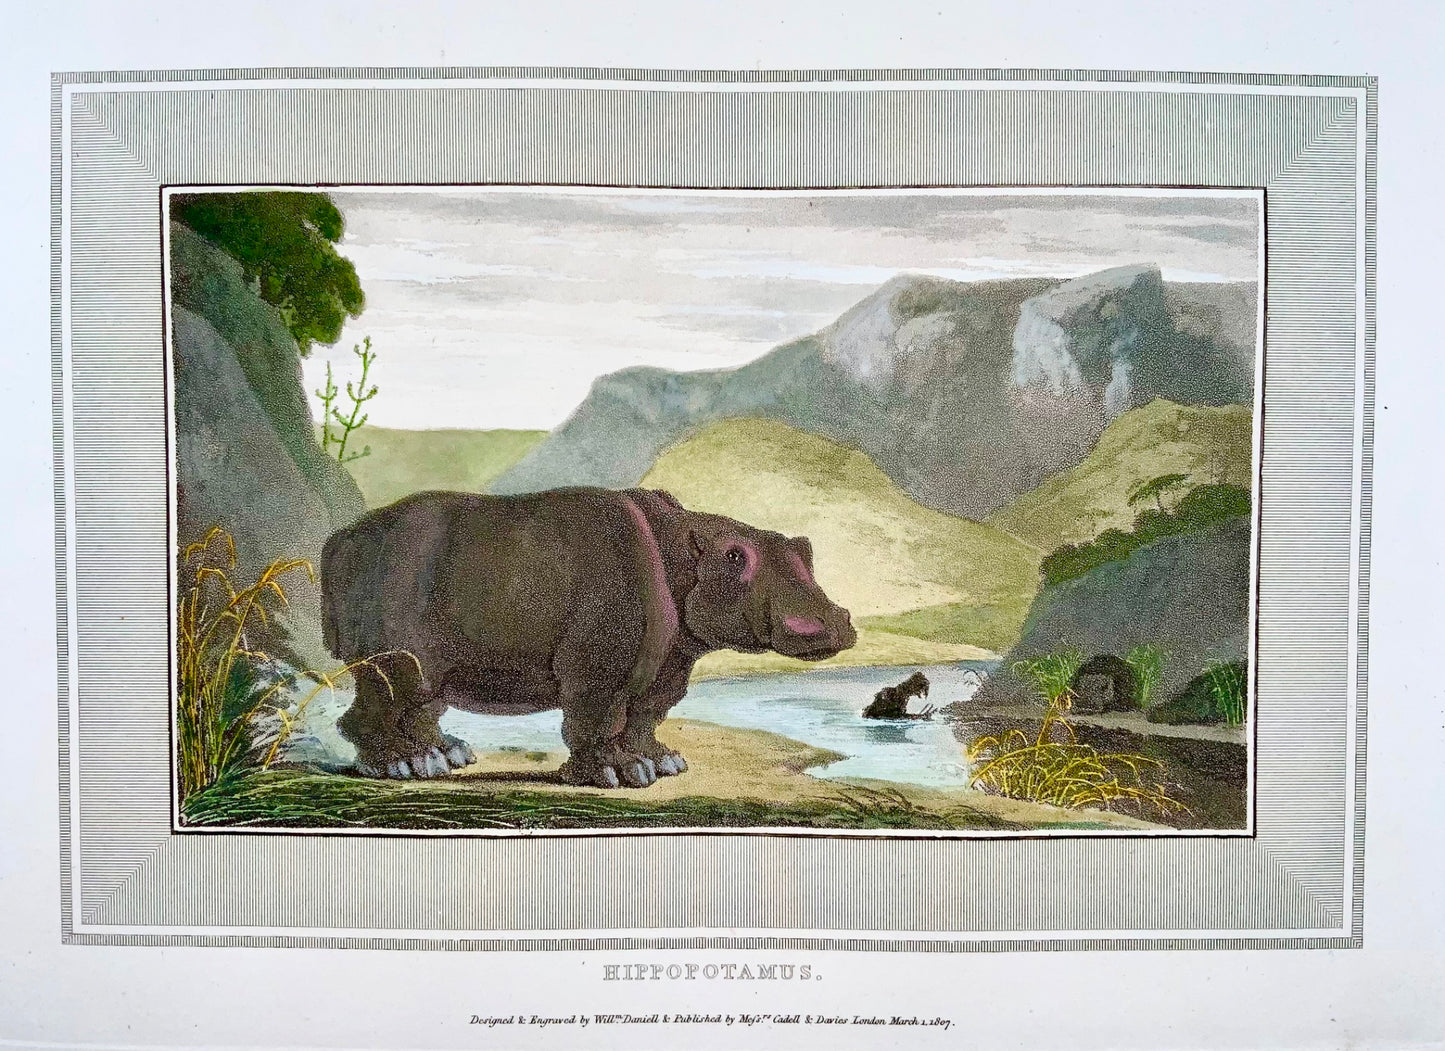 1809 William Daniell, Hippopotamus, mammal, hand coloured aquatint